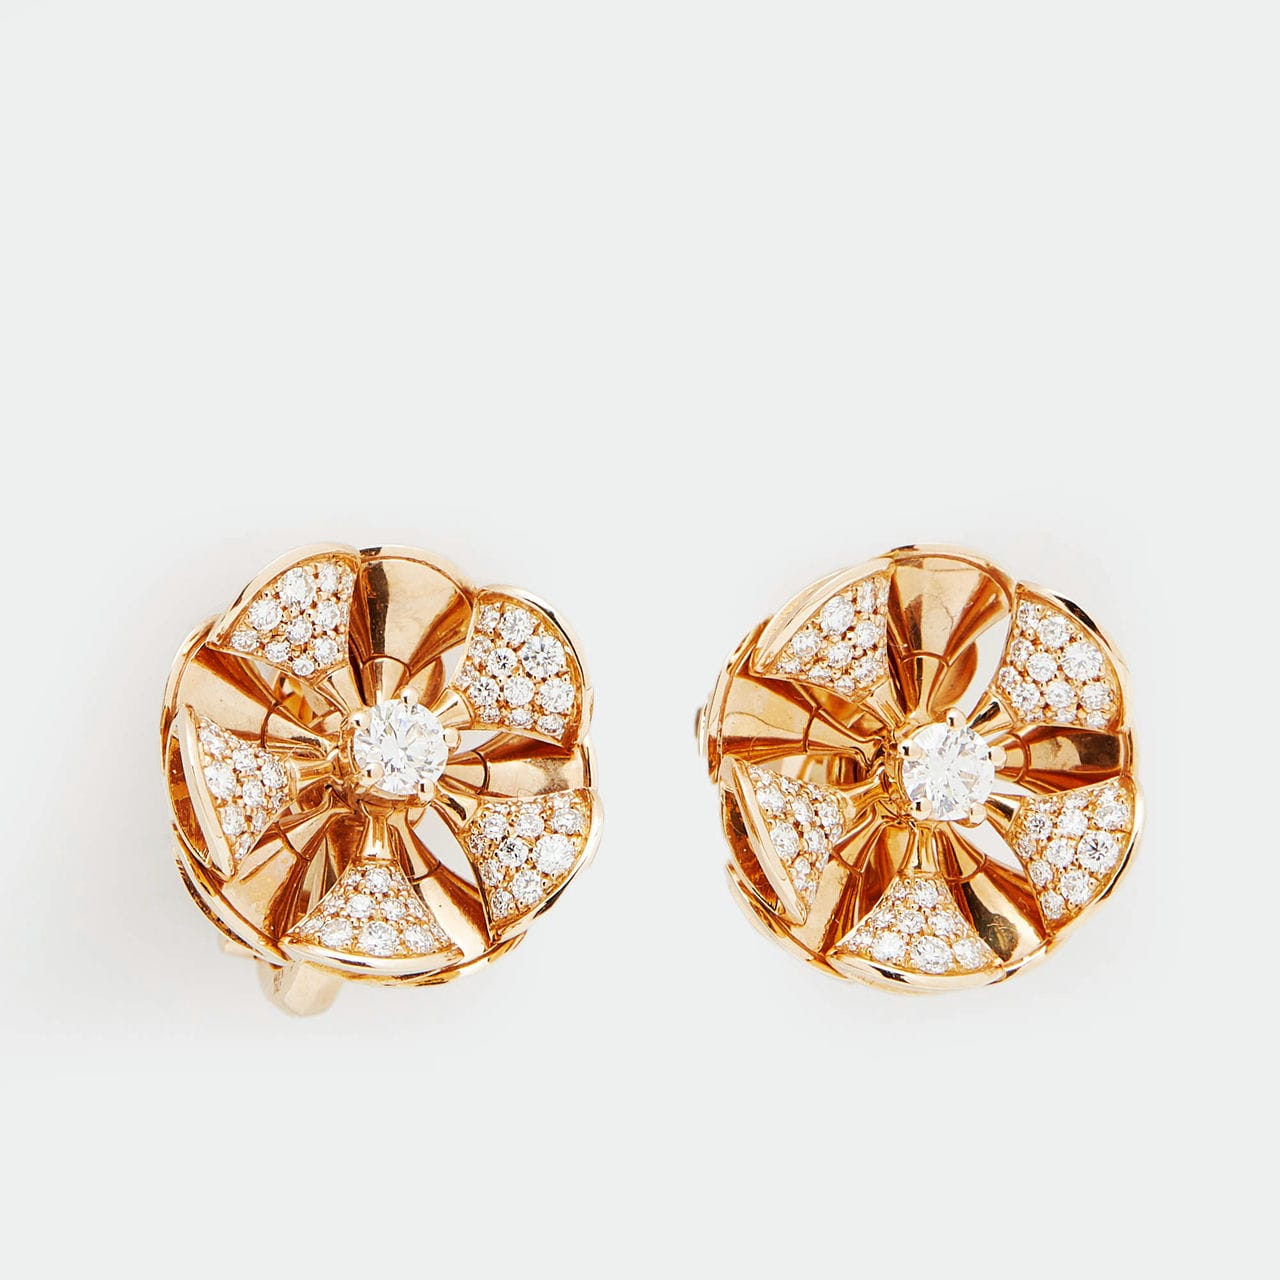 bvlgari rose gold earrings